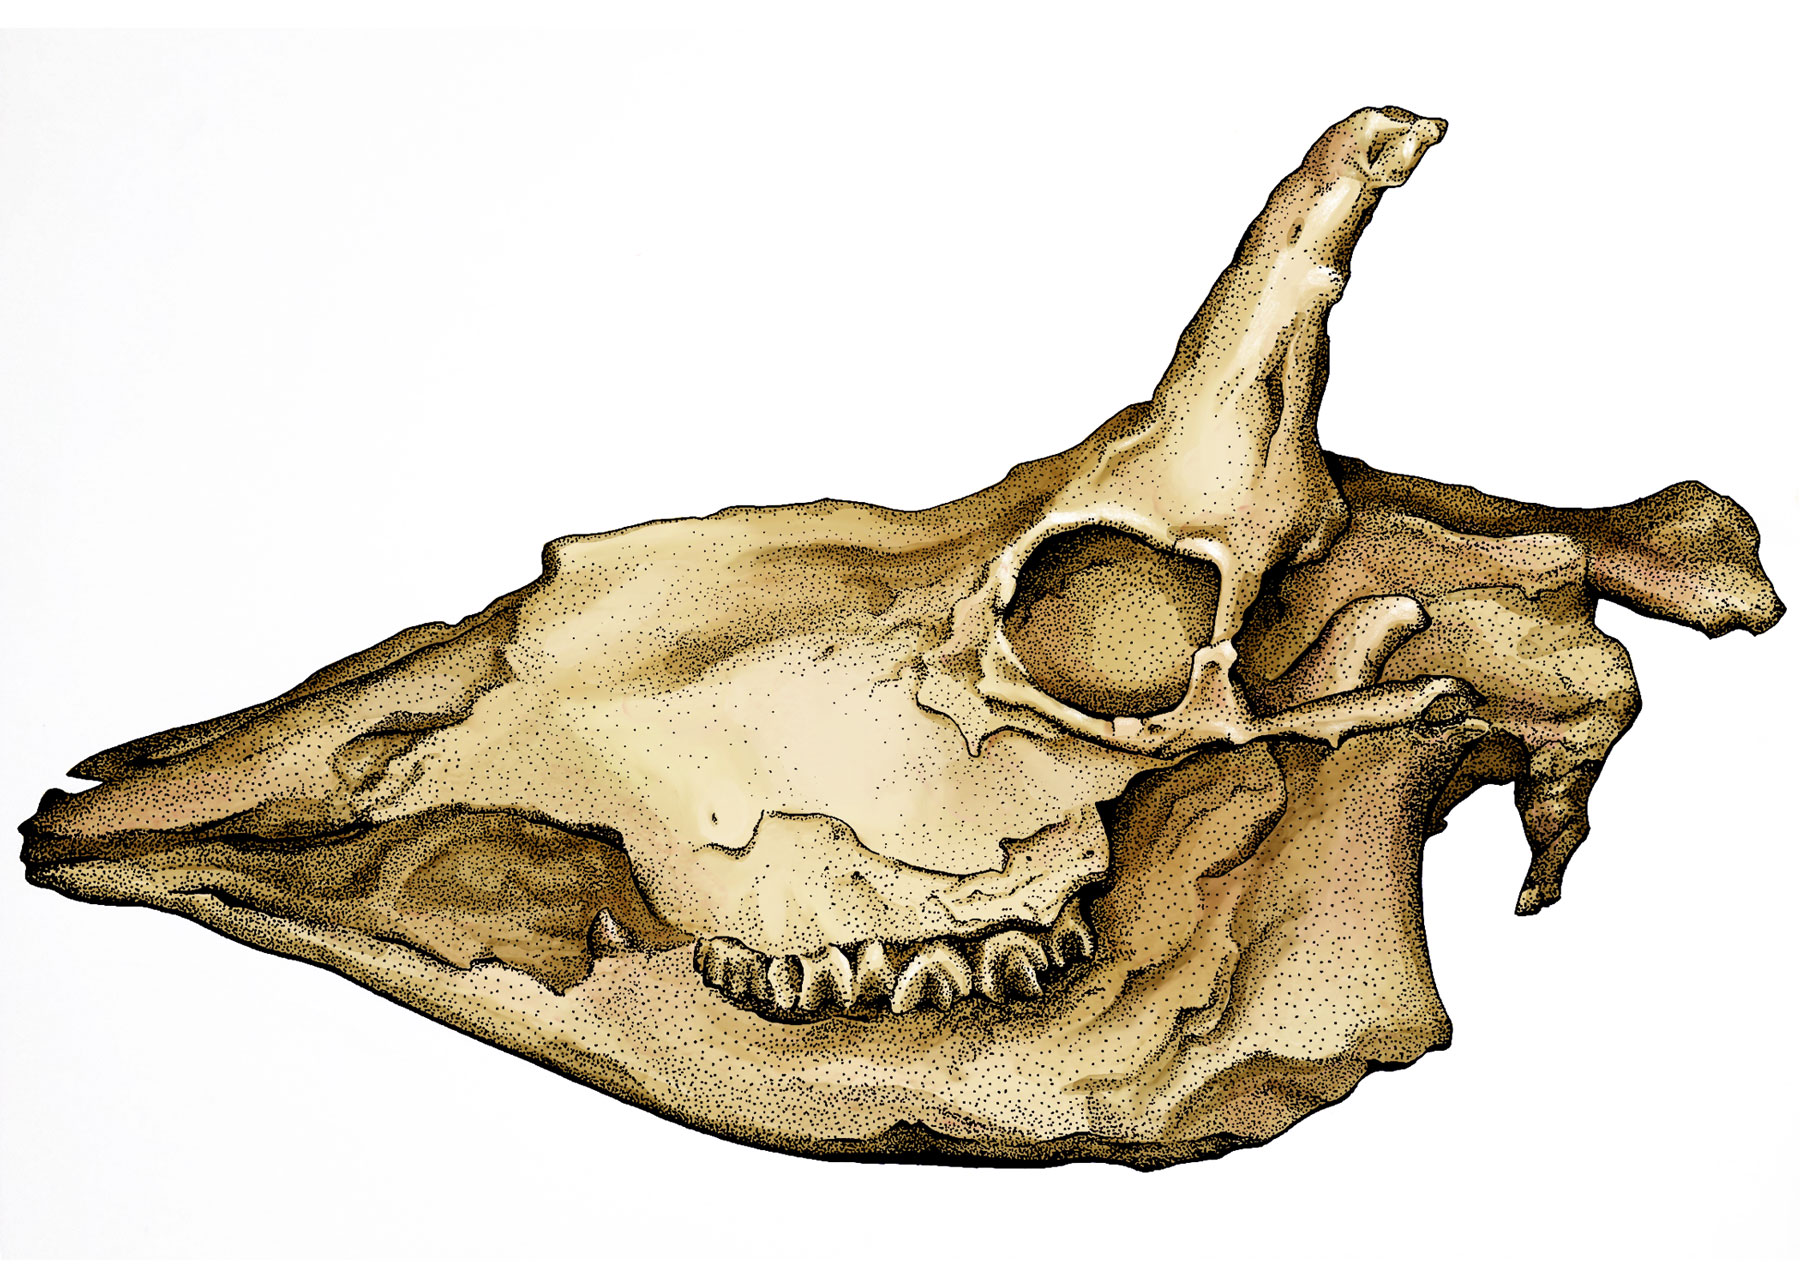 Illustration of extinct animal skull fossil by Mary Koger